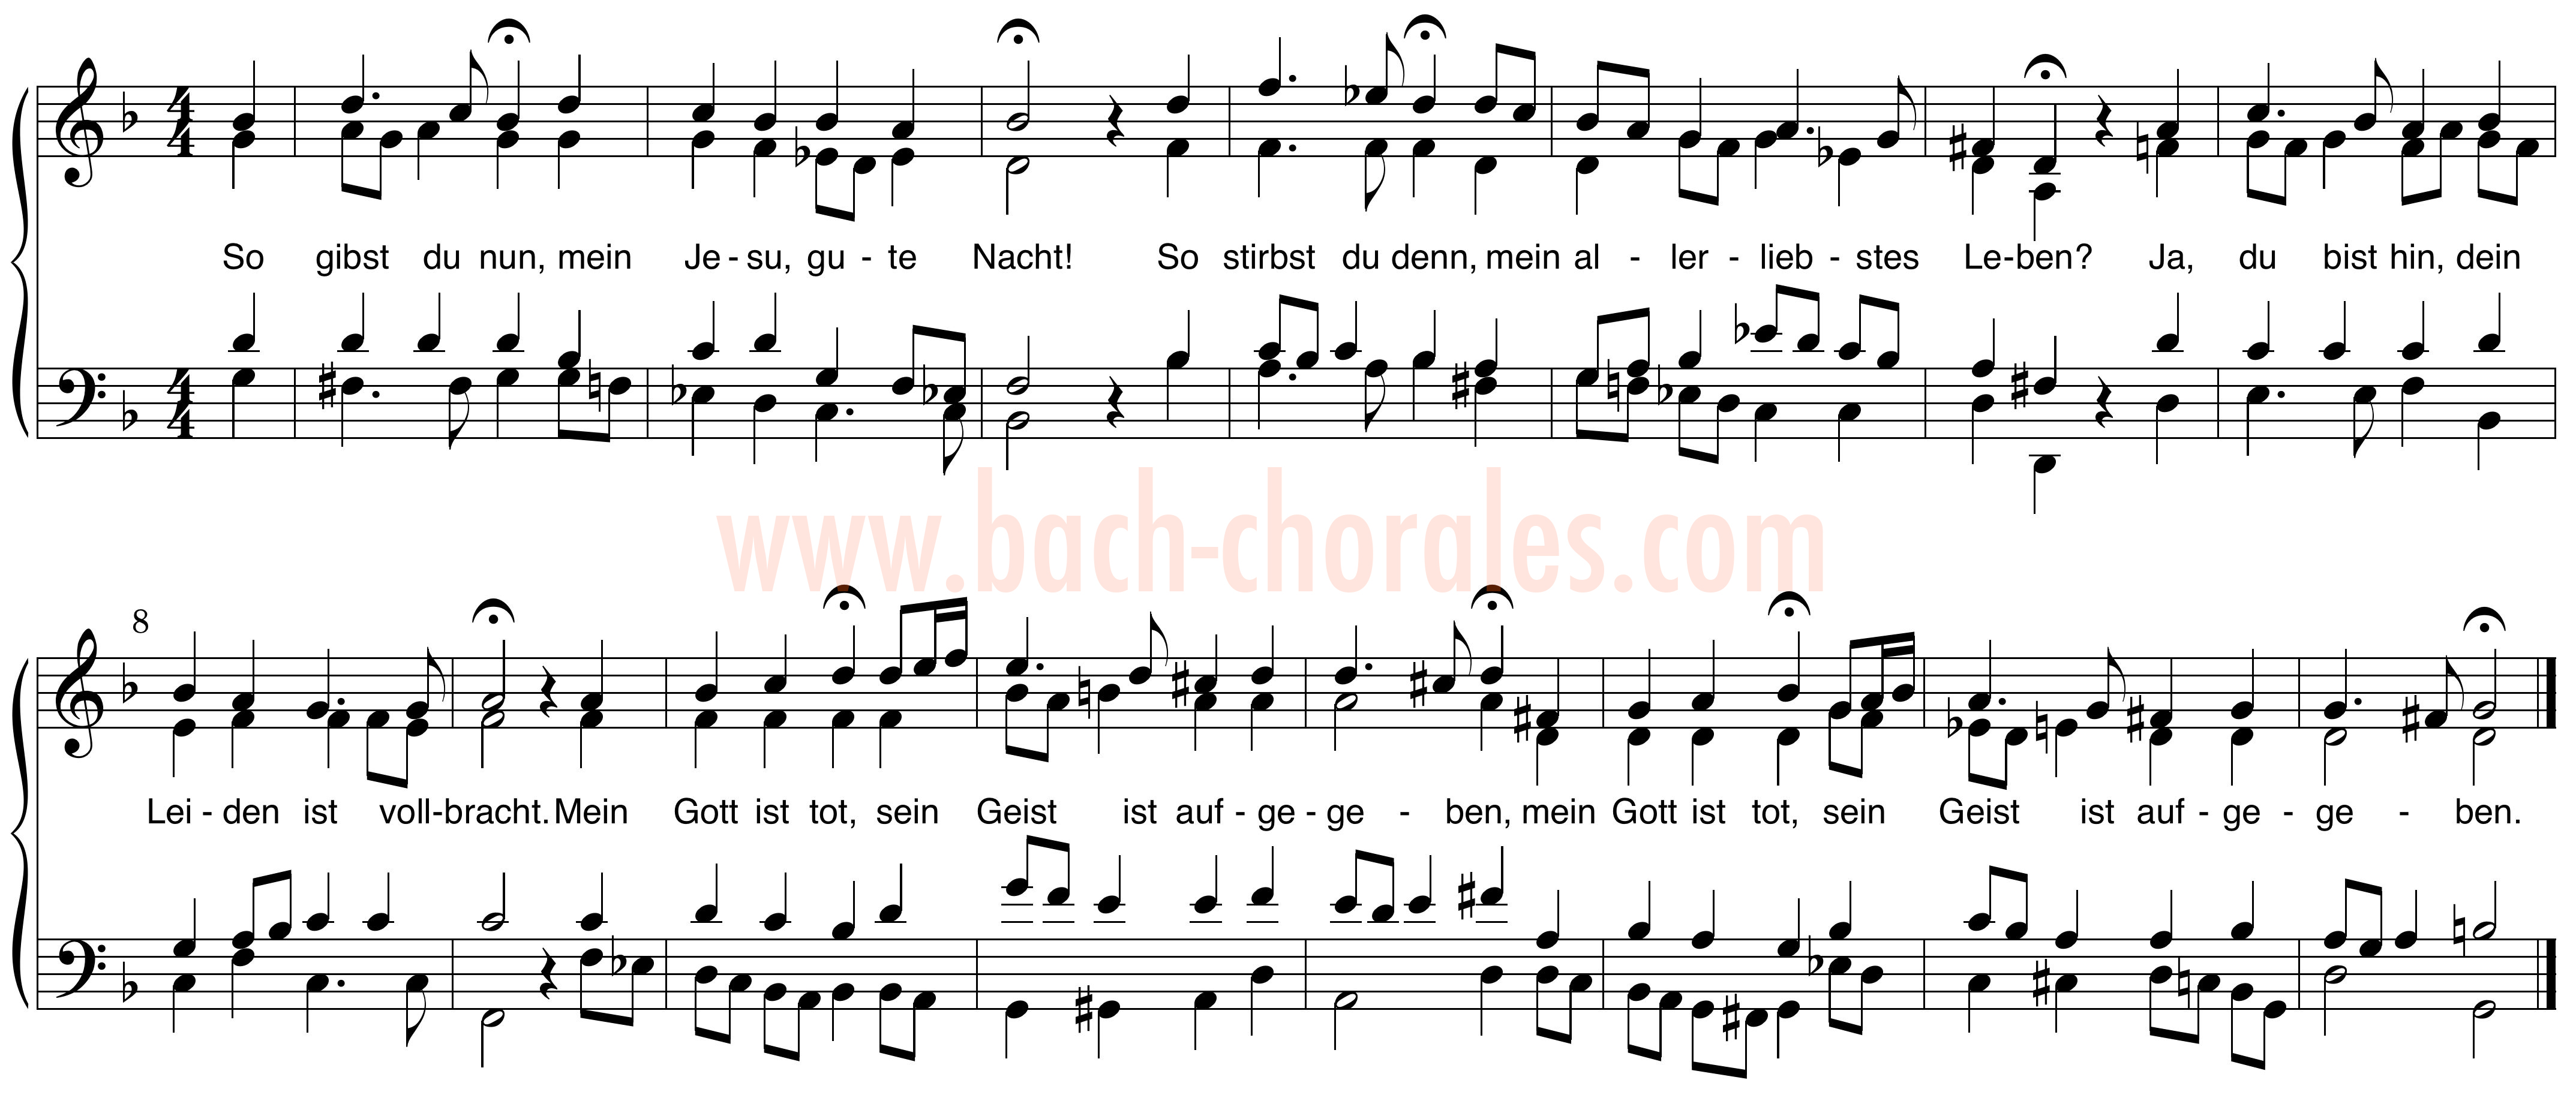 notenbeeld BWV 412 op https://www.bach-chorales.com/